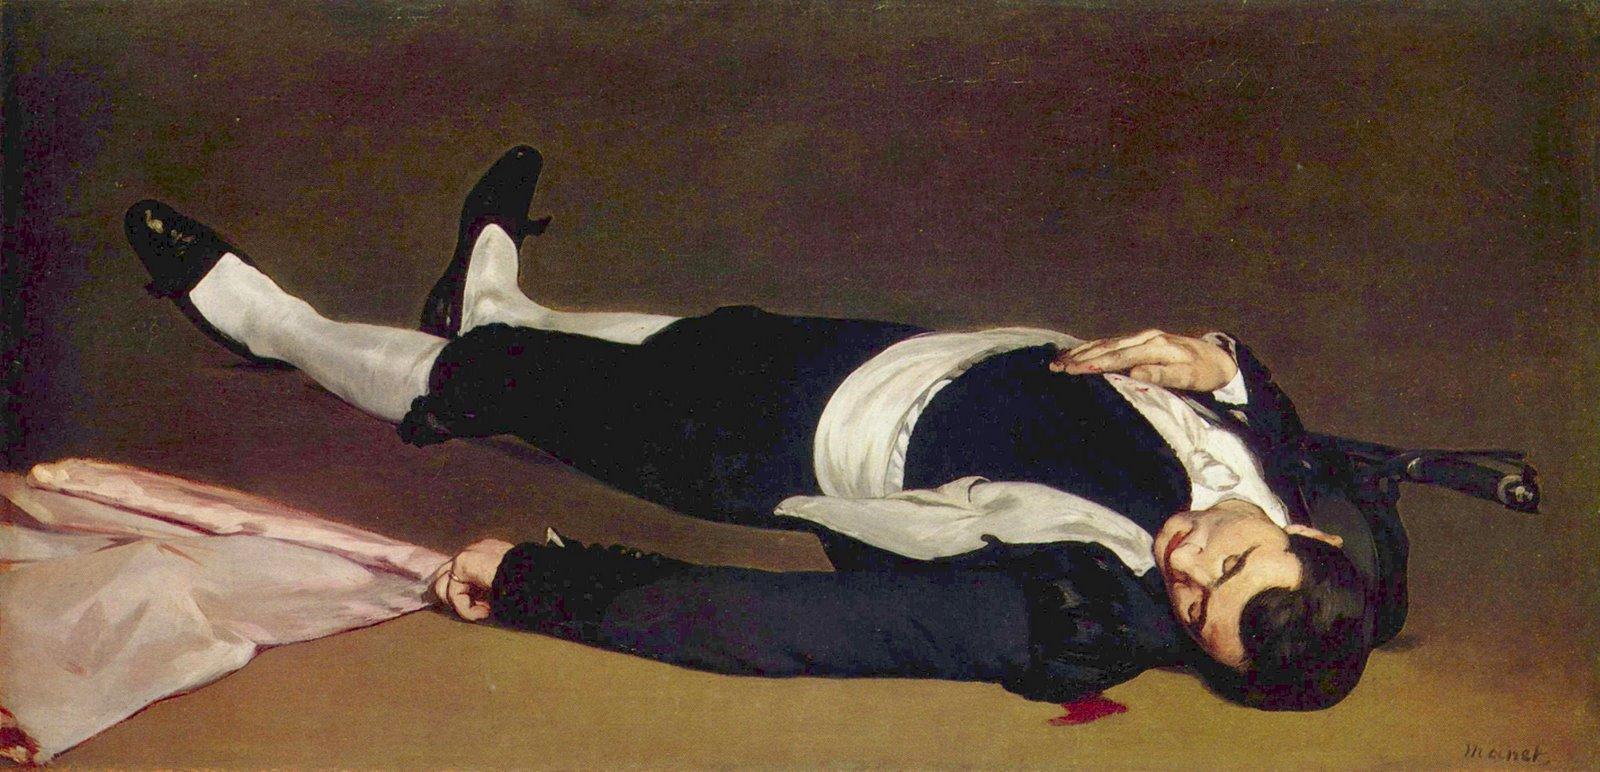 Manet - L'homme mort, 1864-1865